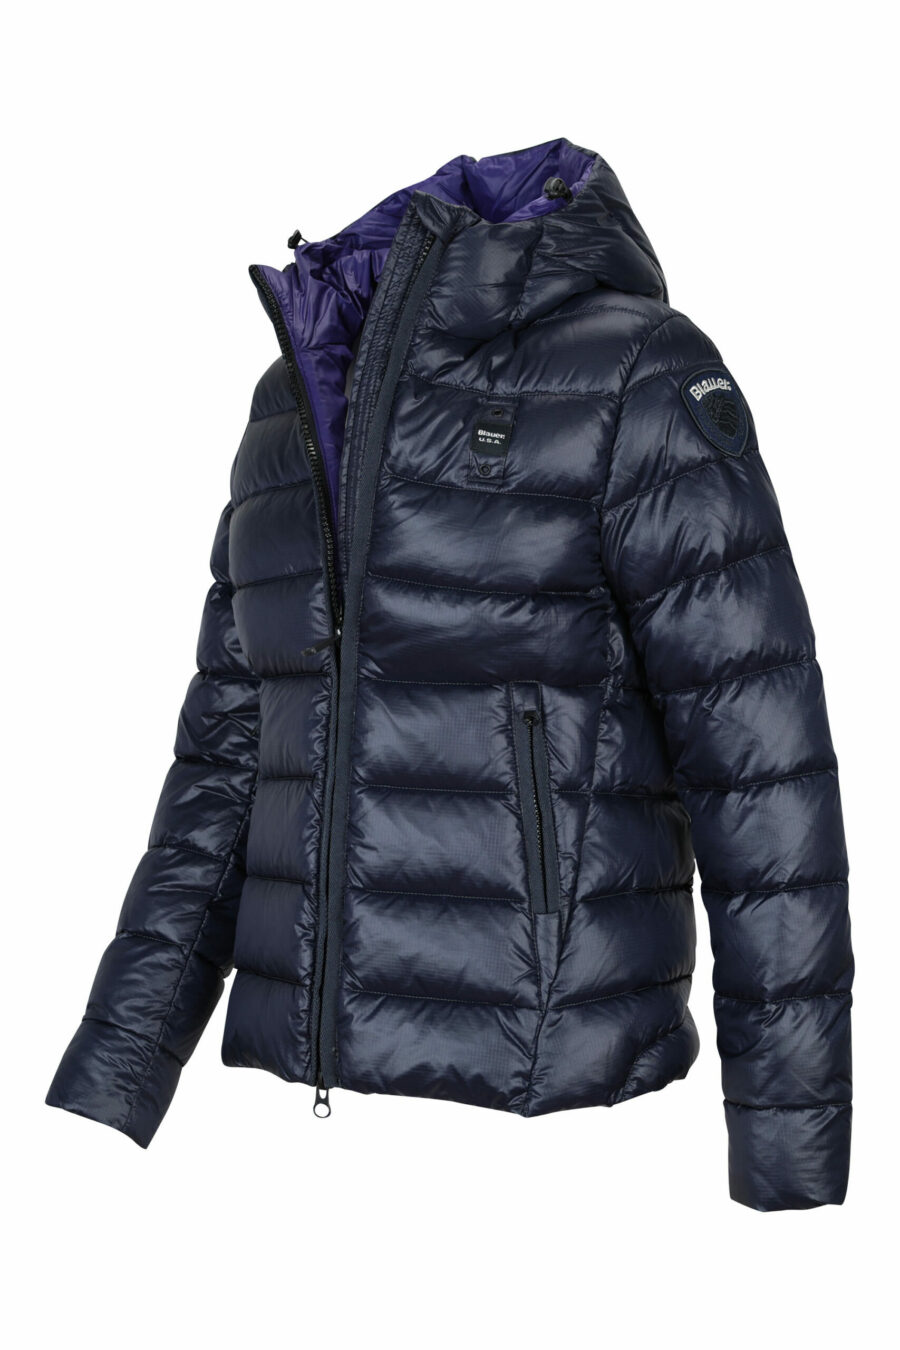 Veste à capuche bleue à doublure droite et intérieur violet avec logo - 8058610644932 2 à l'échelle